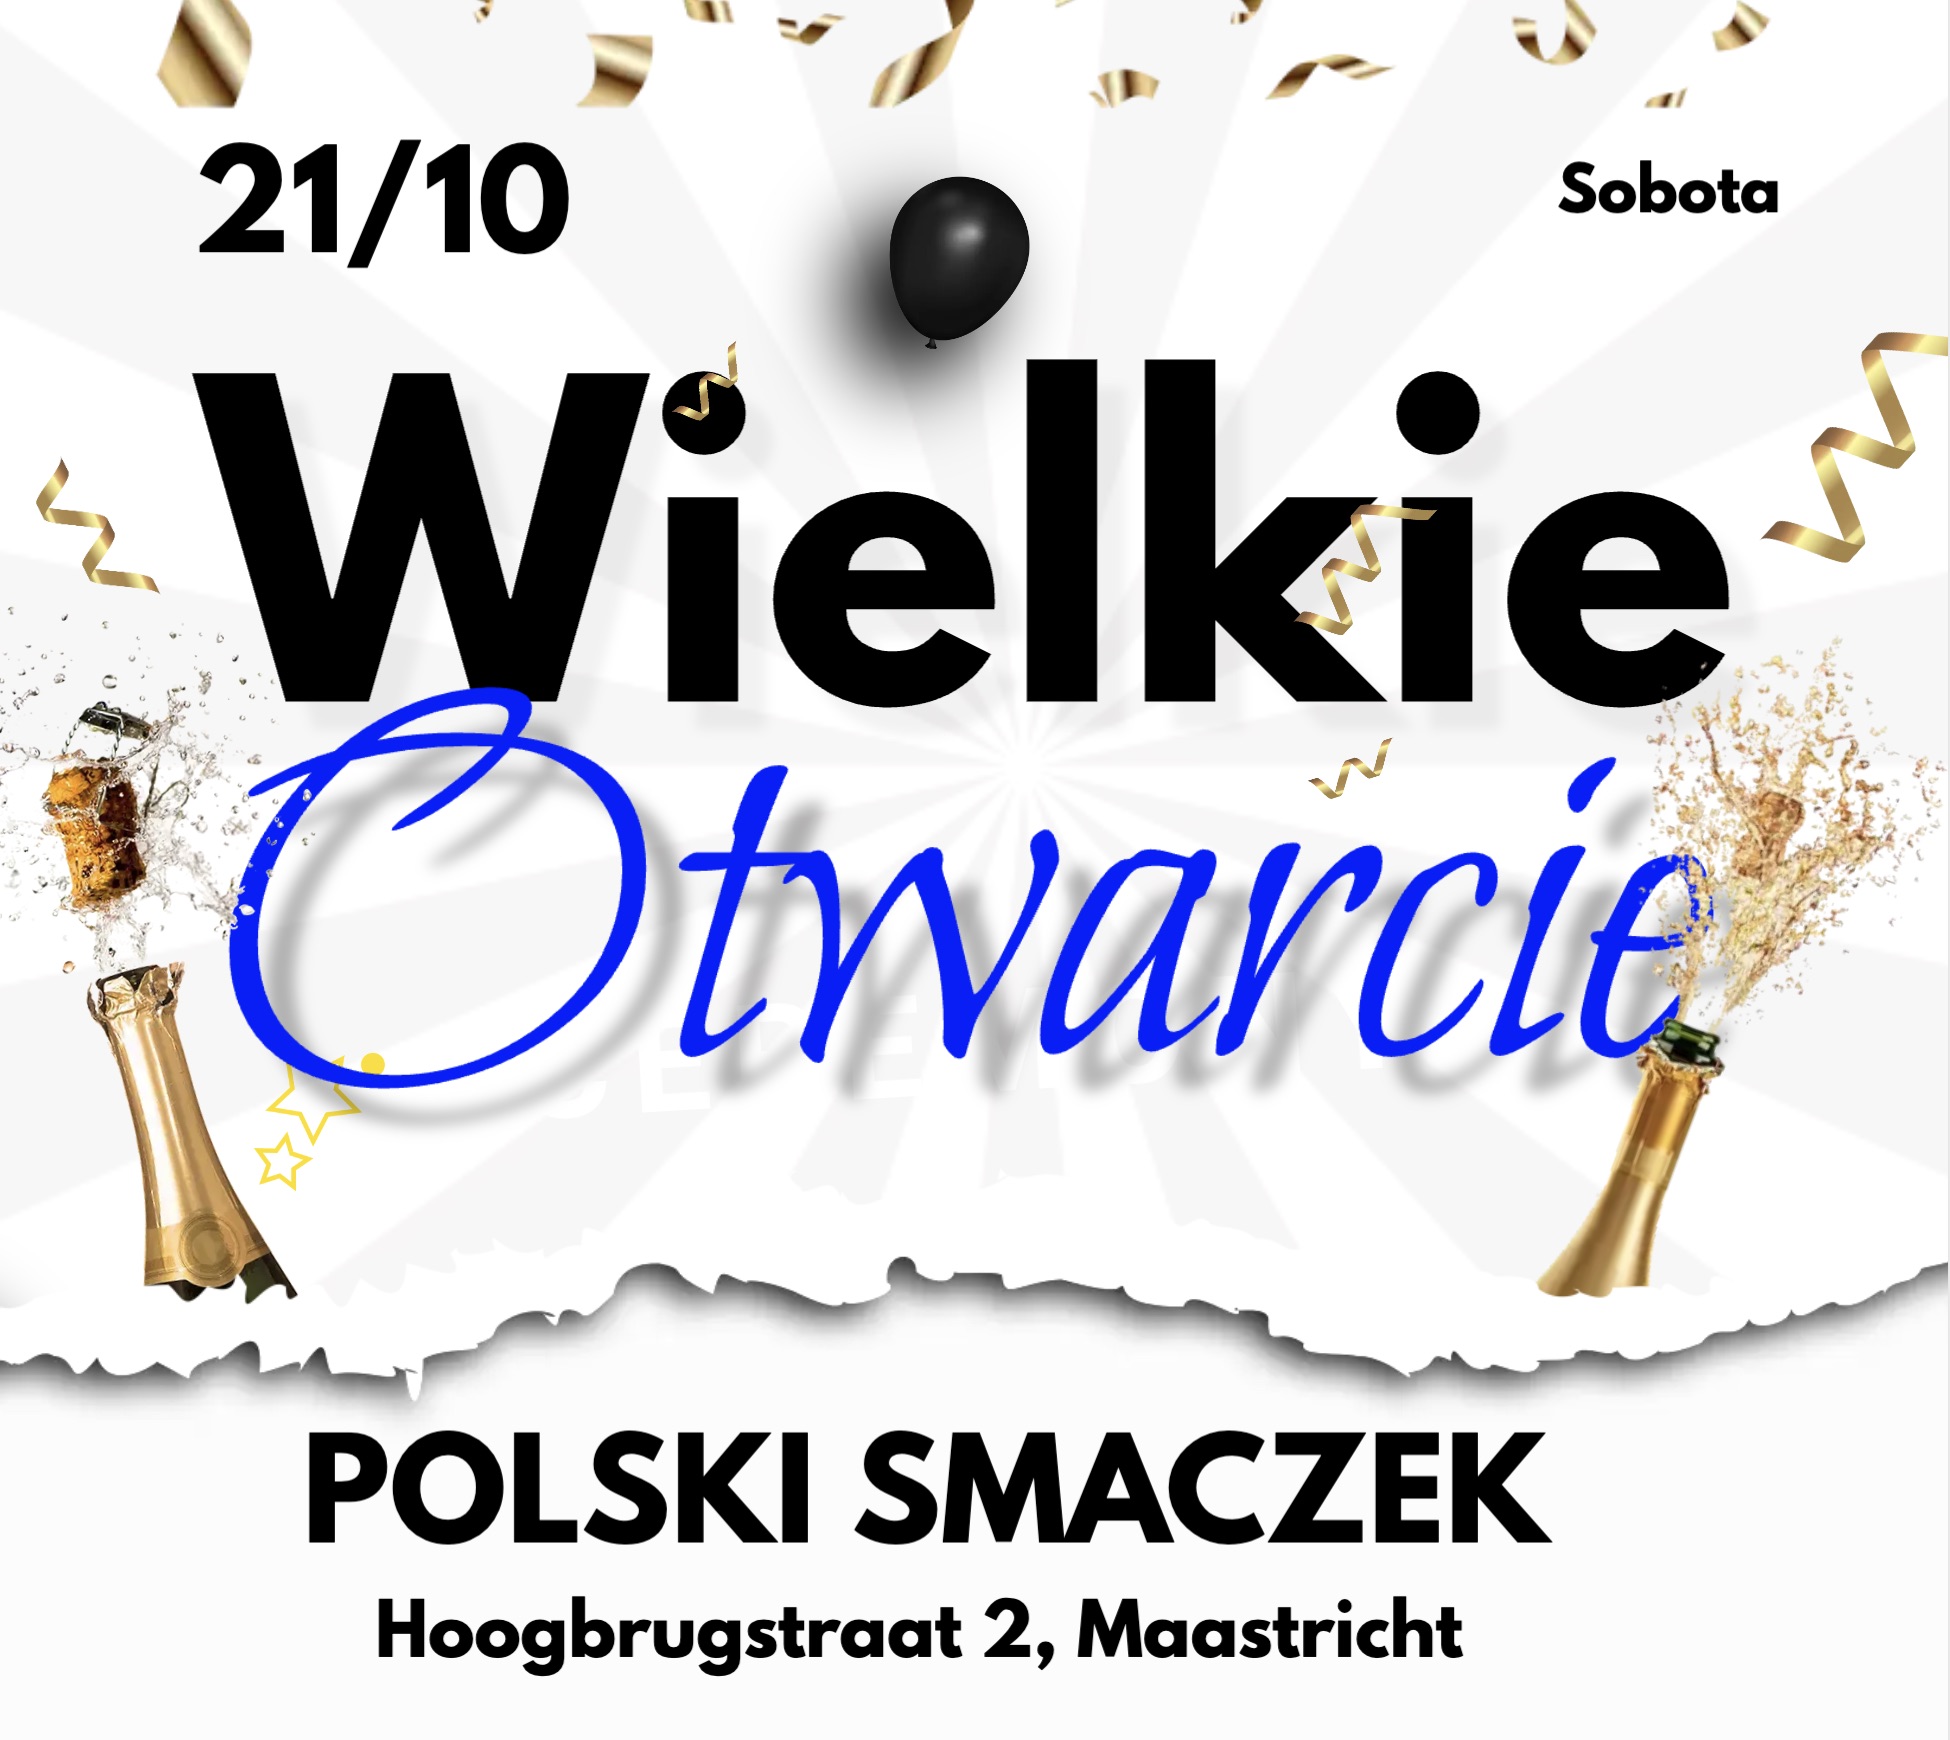 PolskiSmaczek